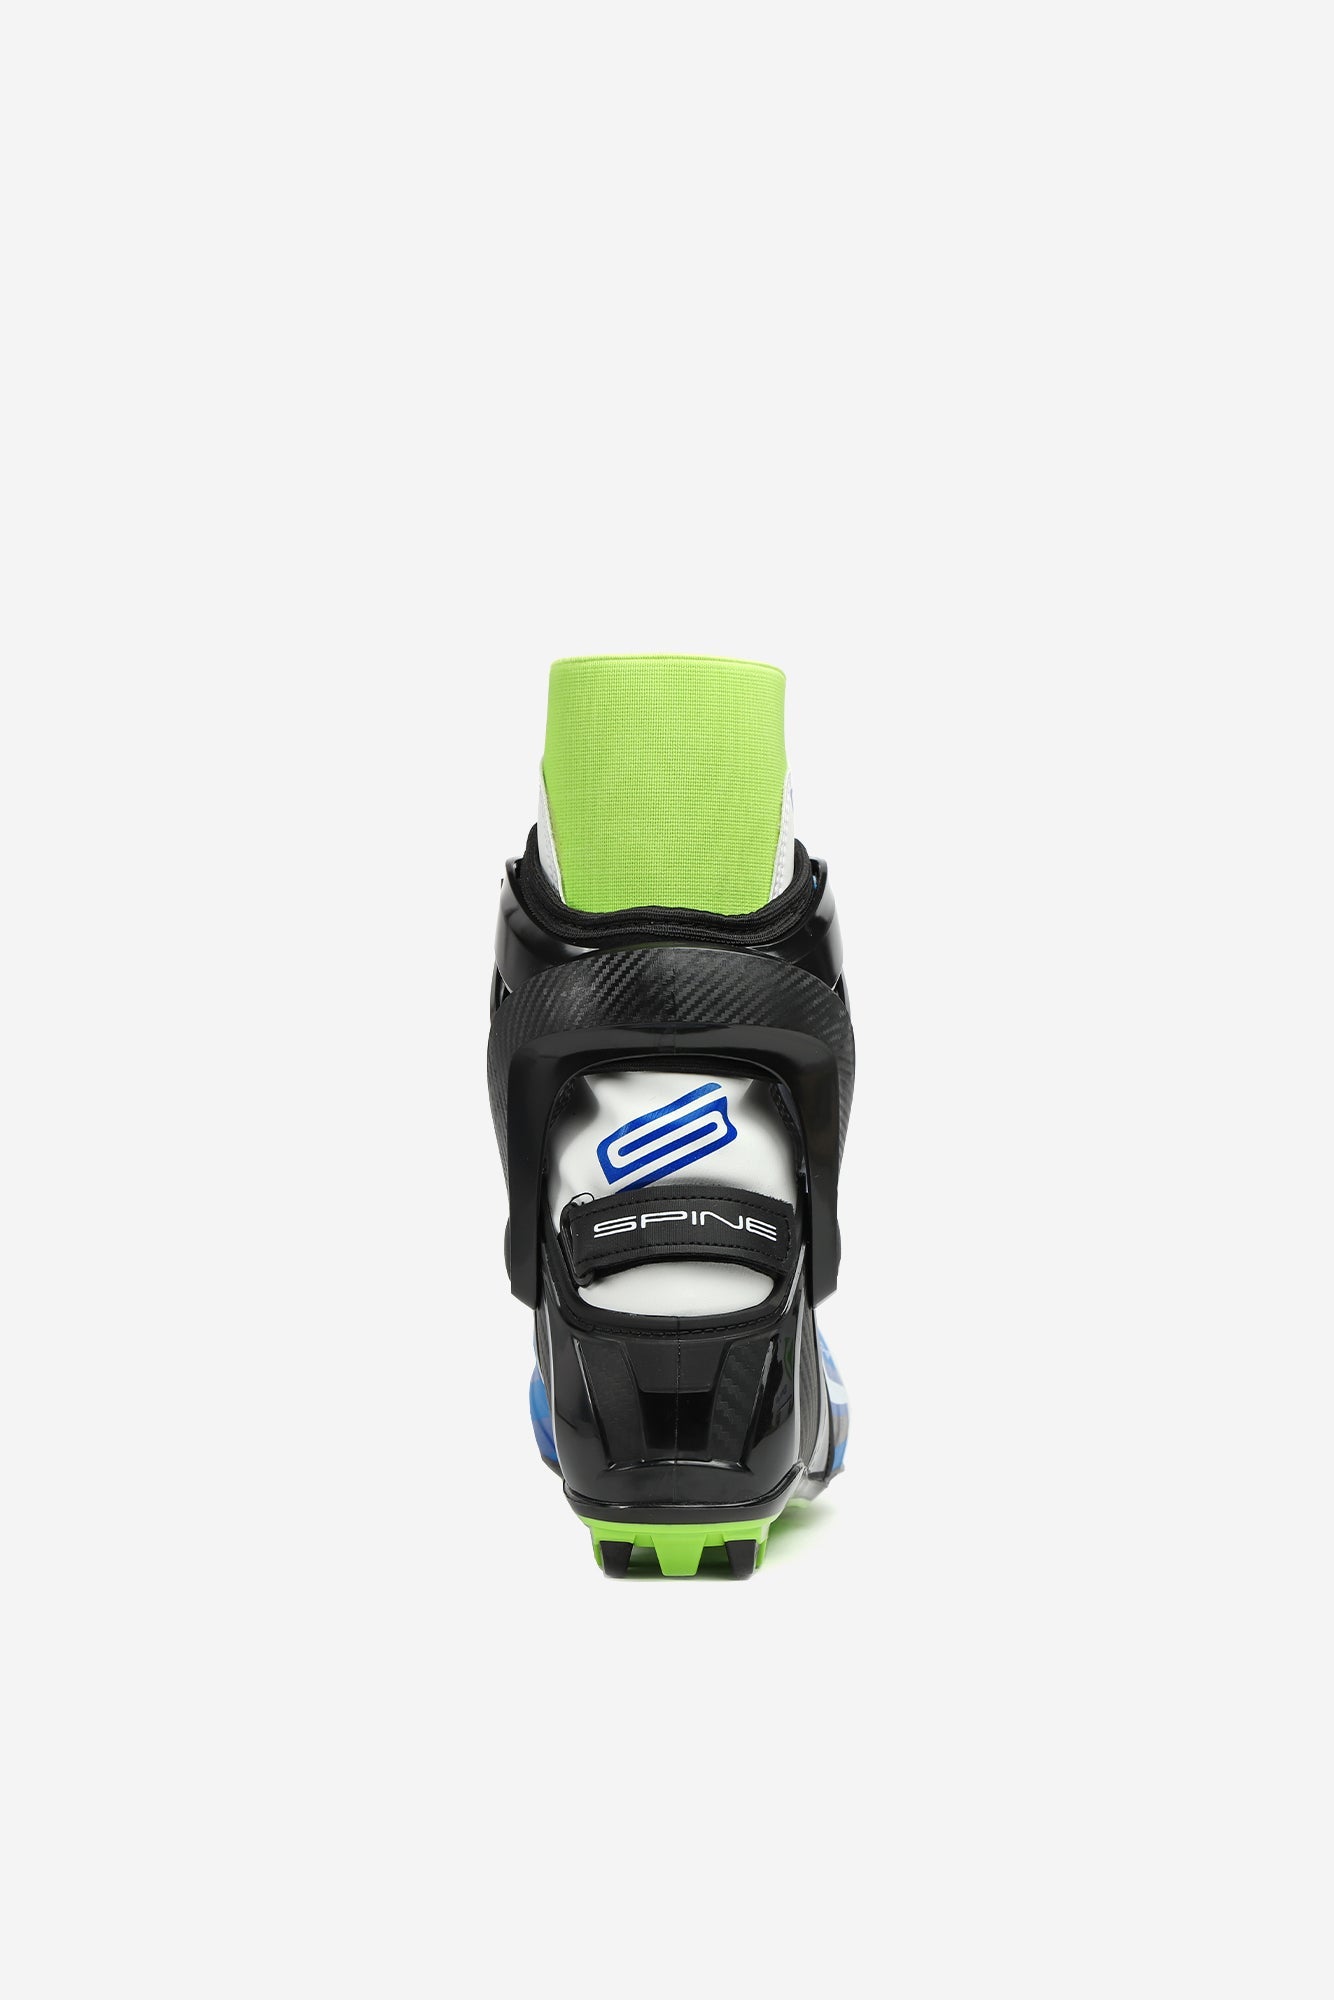 Concept Skate Pro 297 (NNN) Nordic Ski Boots Angle 1